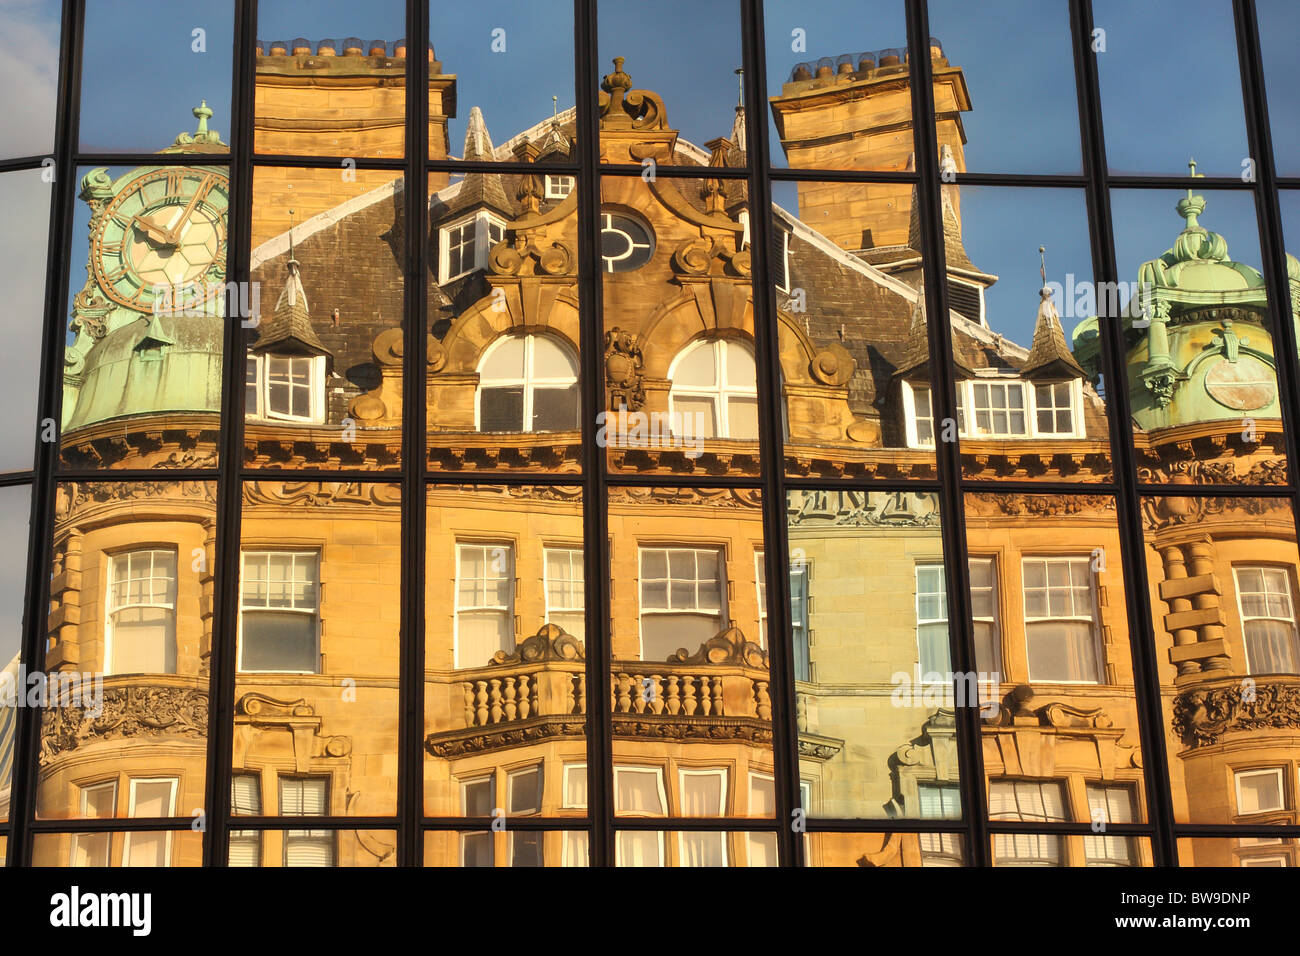 Une réflexion de l'Emerson Édifice Chambers dans le verre de l'architecture de Eldon Square. Banque D'Images